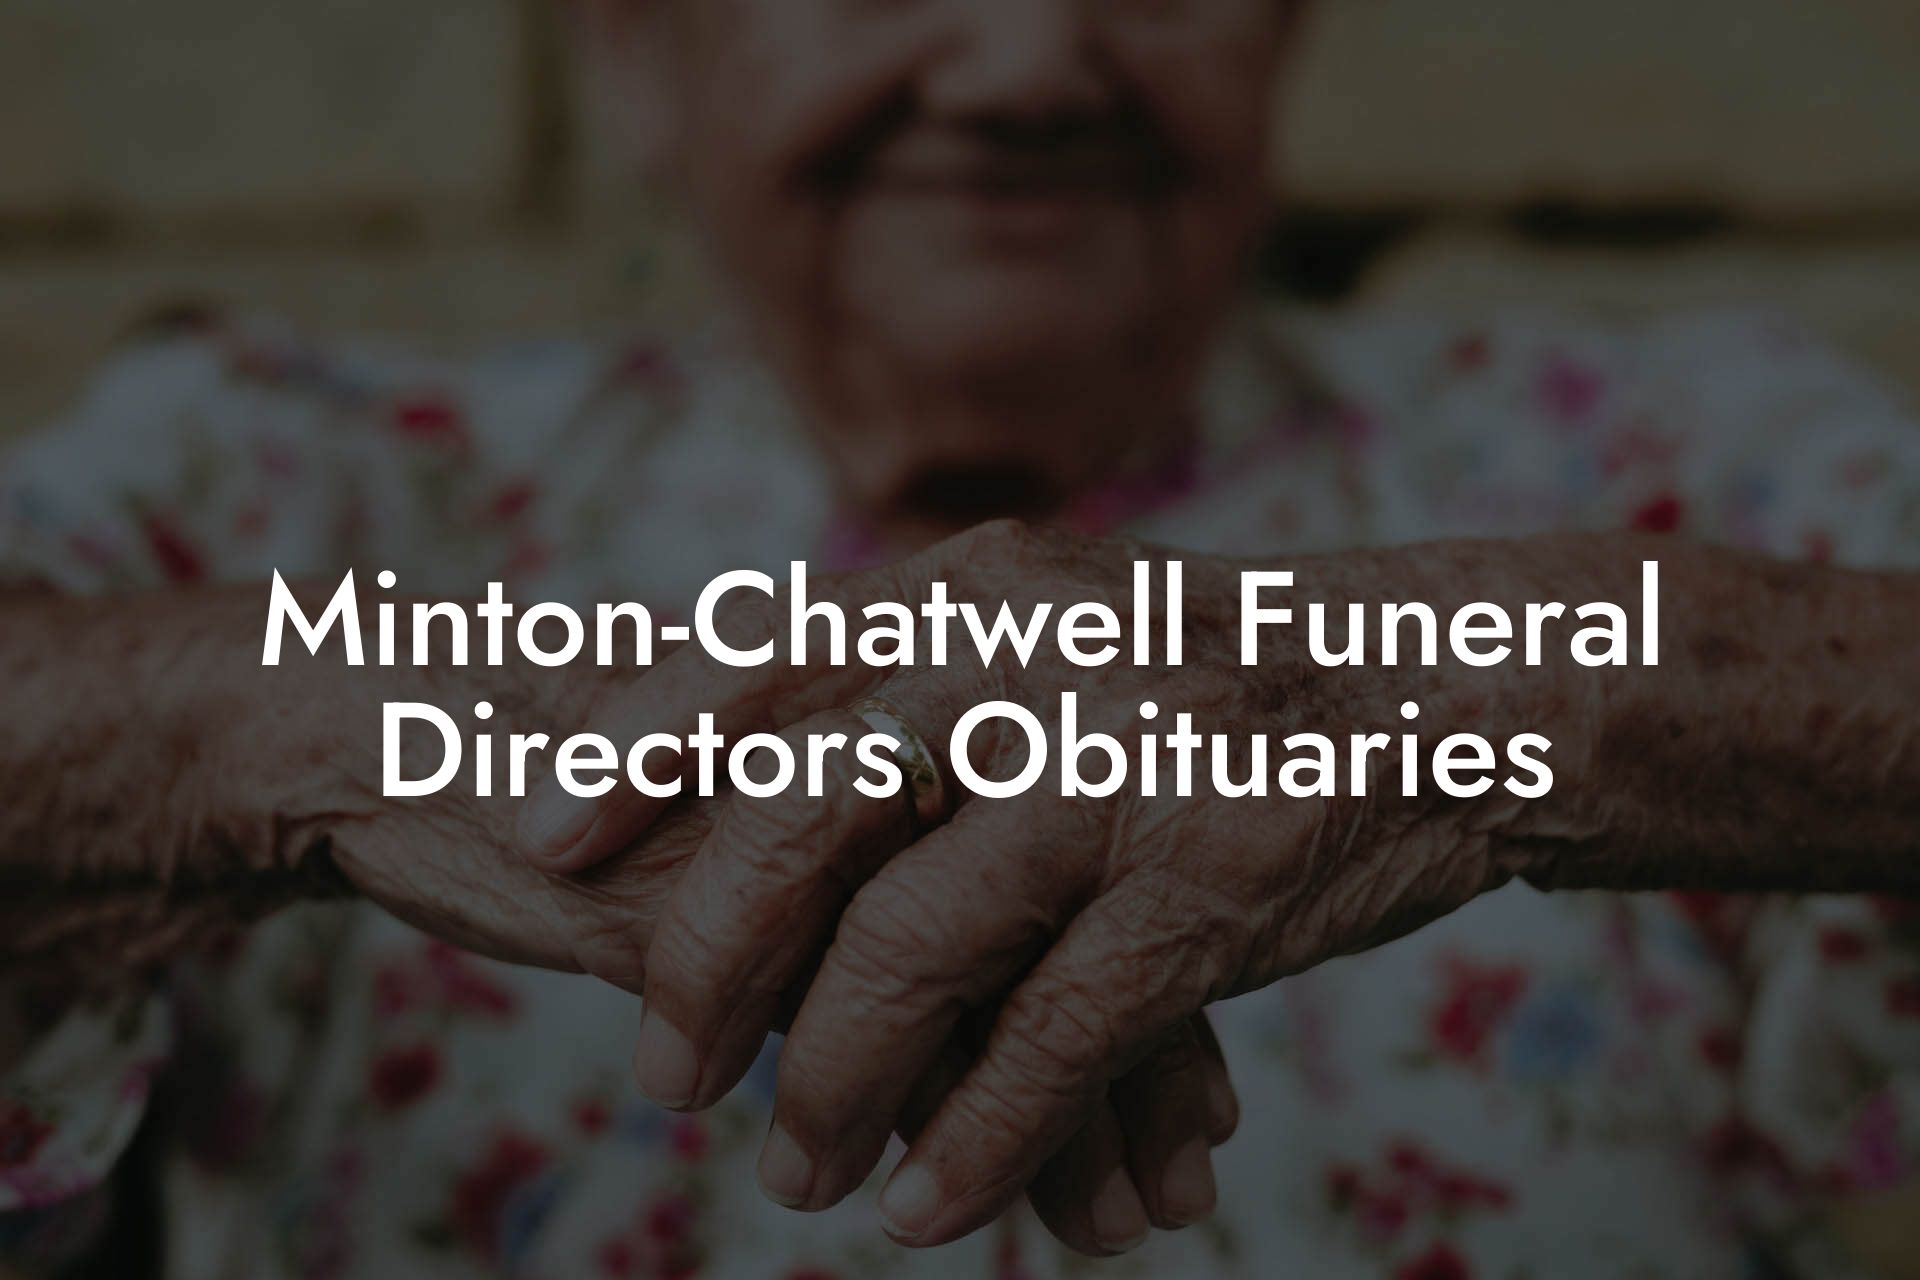 Minton-Chatwell Funeral Directors Obituaries